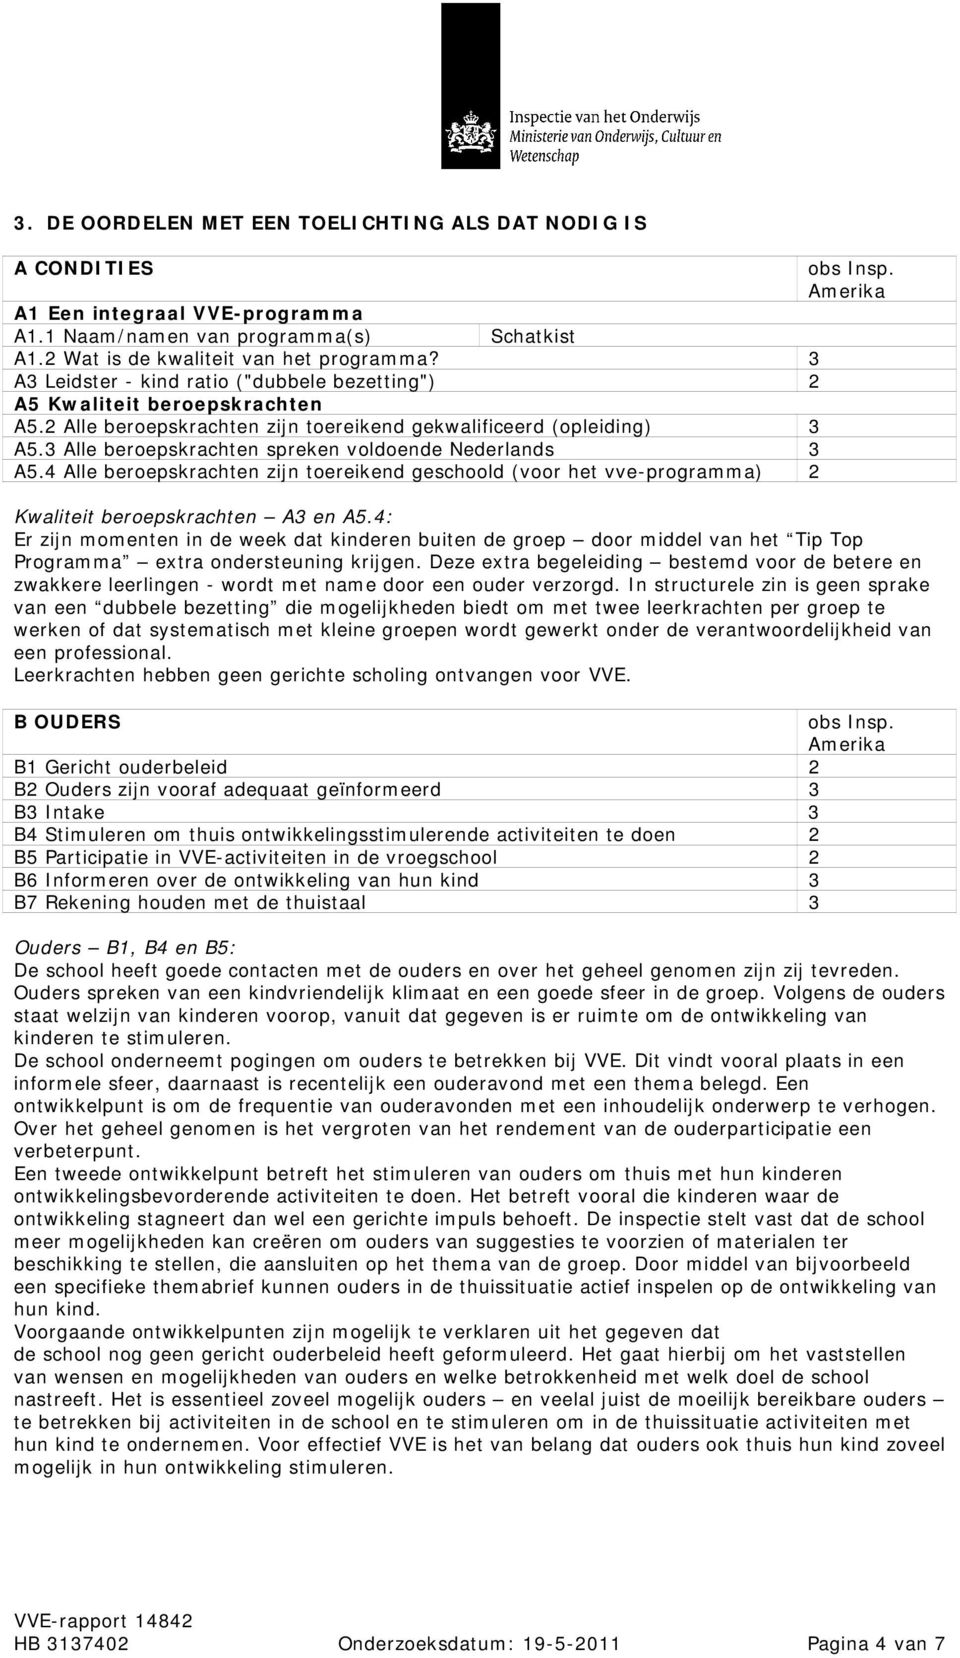 Alle beroepskrachten spreken voldoende Nederlands A5.4 Alle beroepskrachten zijn toereikend geschoold (voor het vve-programma) 2 Kwaliteit beroepskrachten A en A5.